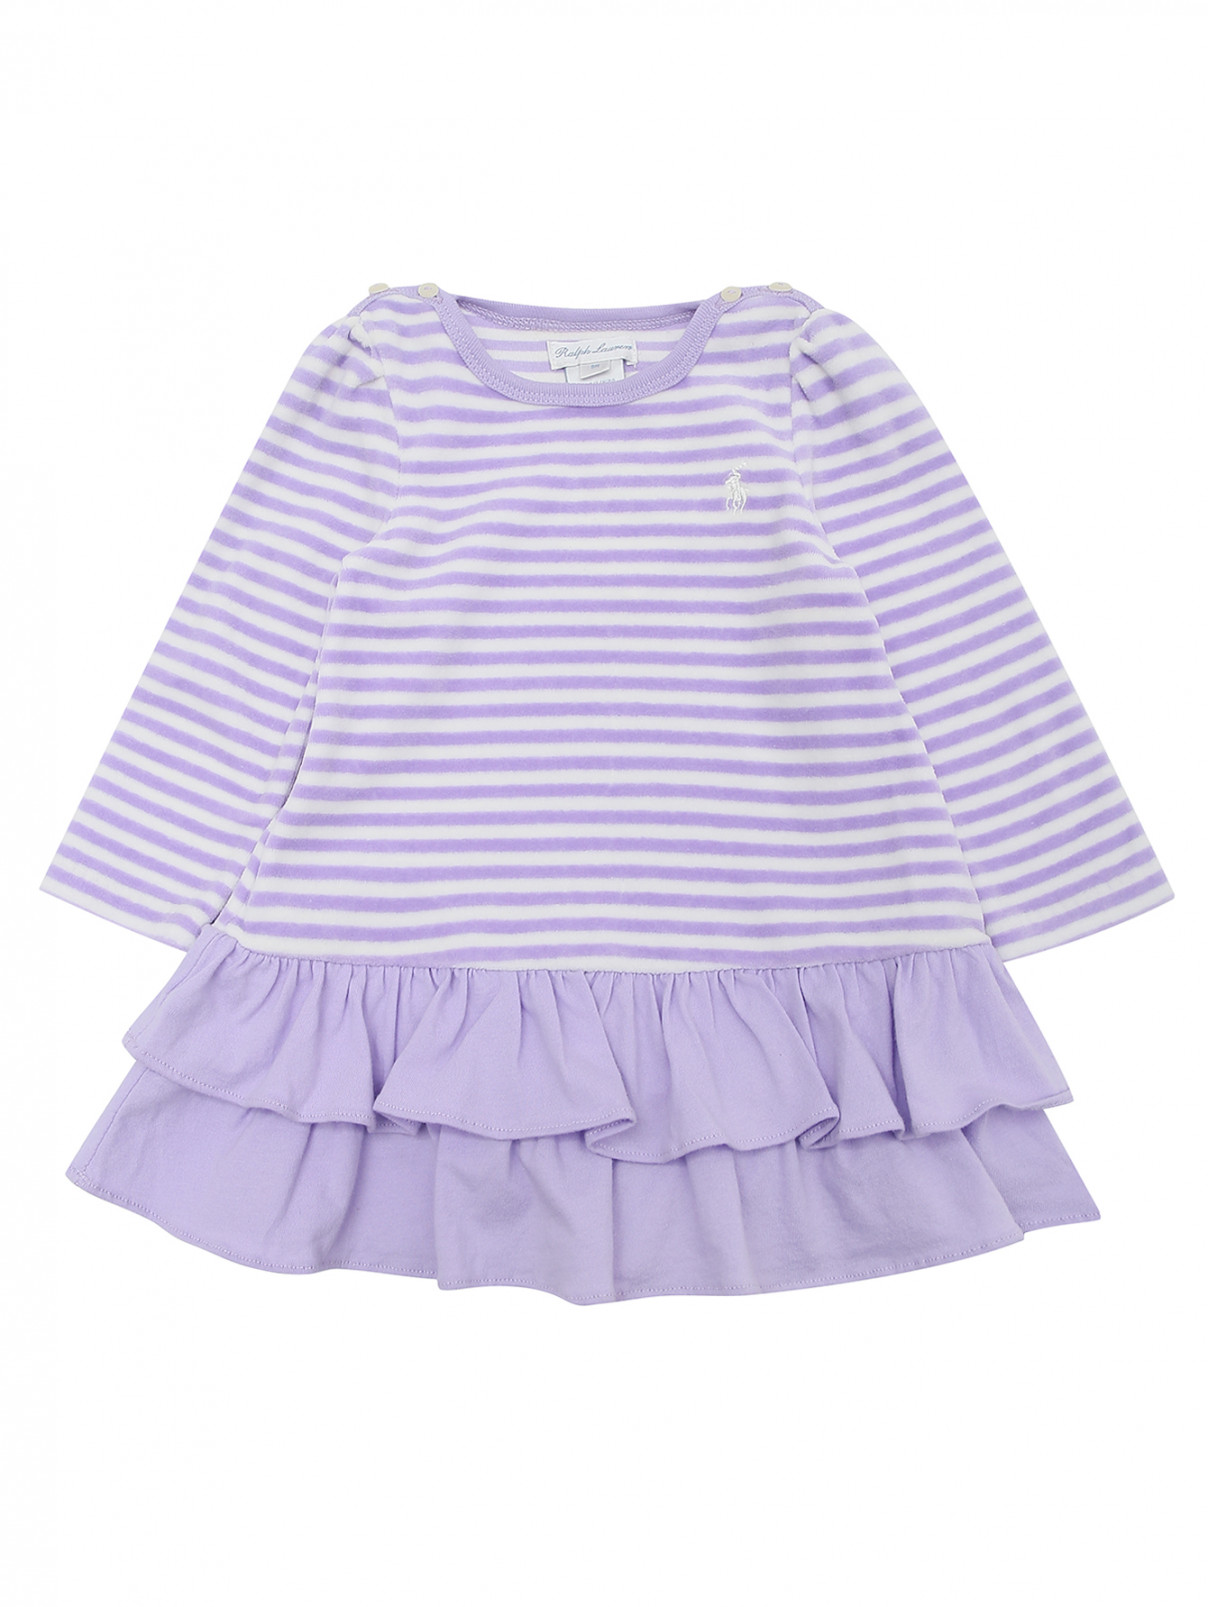 Платье велюровое с оборками Ralph Lauren  –  Общий вид  – Цвет:  Фиолетовый